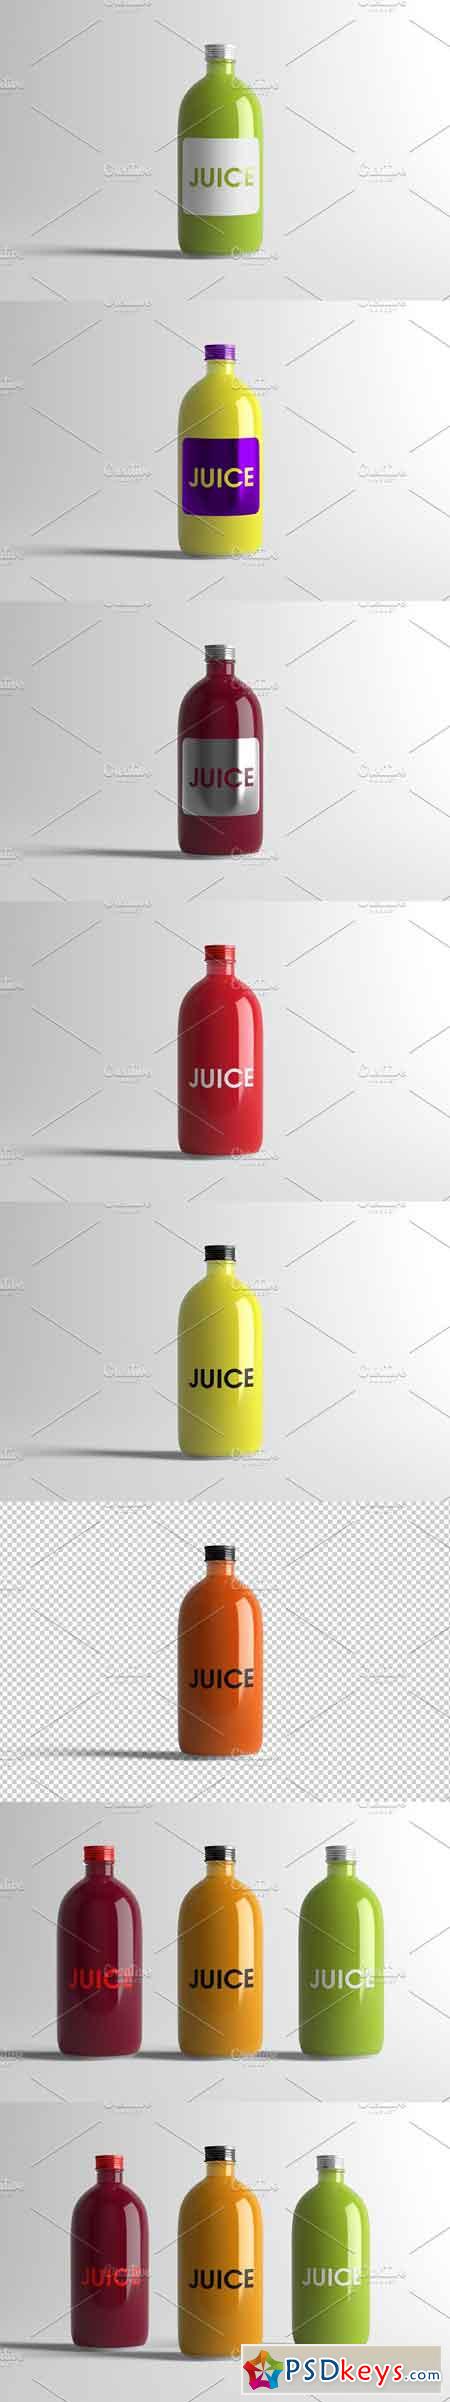 Juice Bottle Mock-Up 3